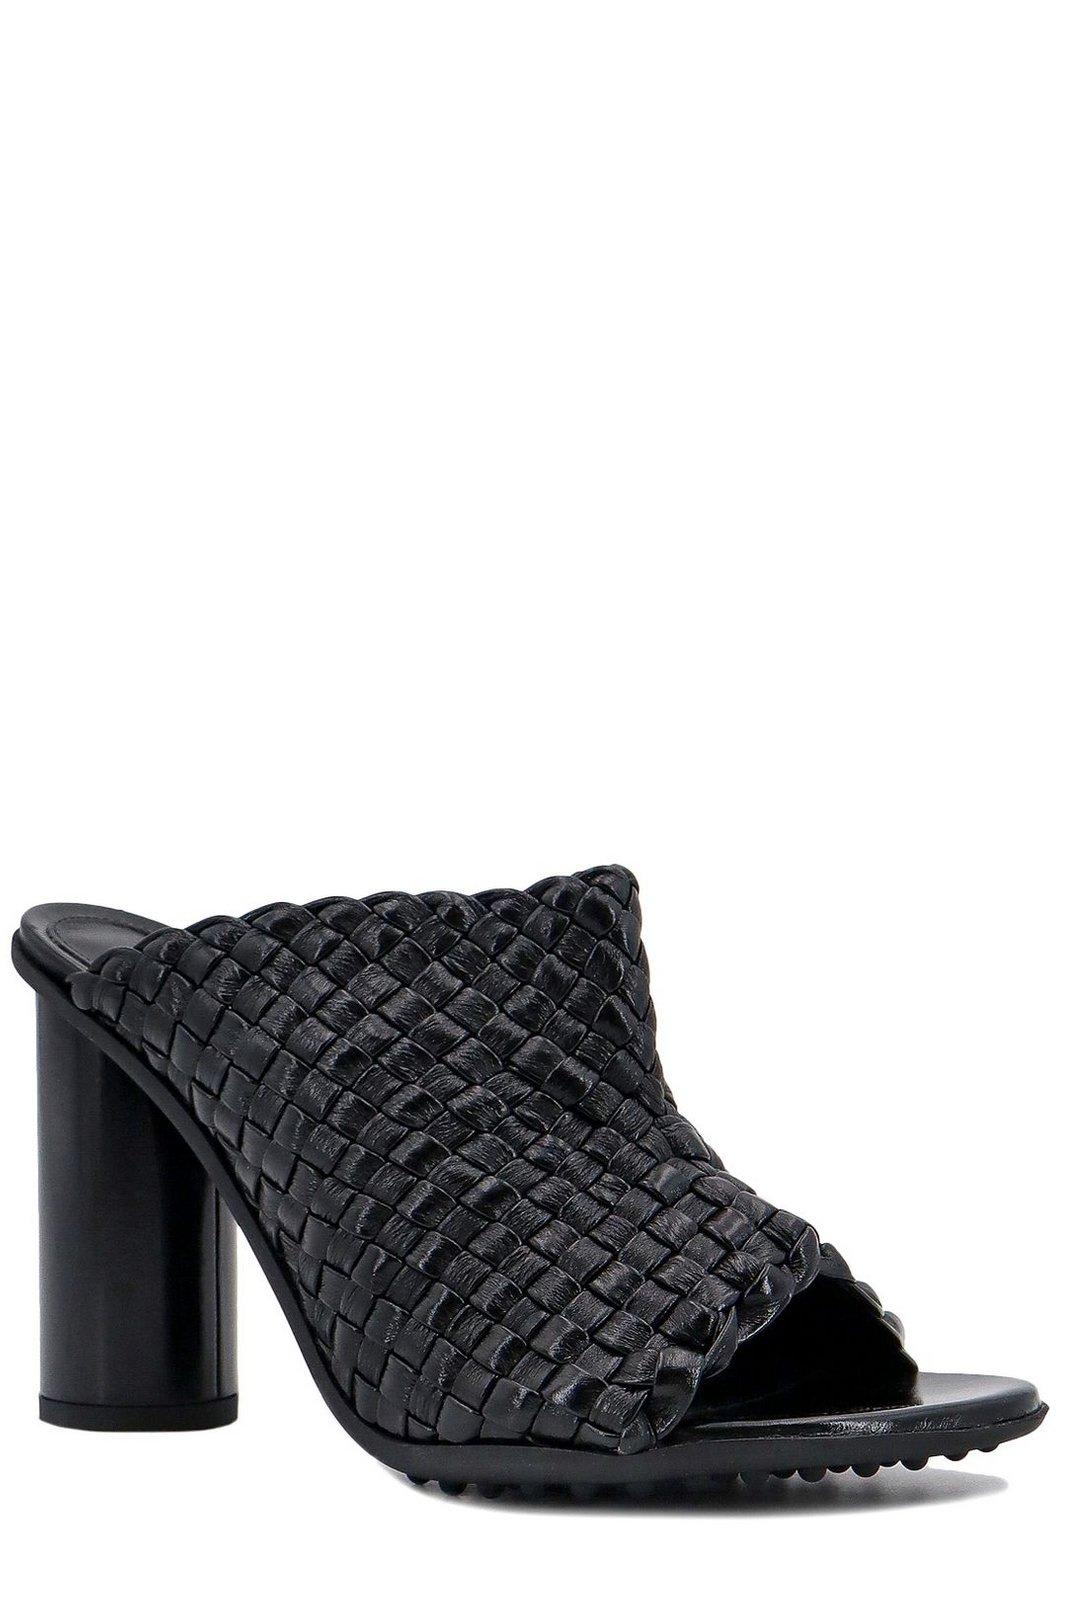 Shop Bottega Veneta Atomic Intrecciato Sandals In Black